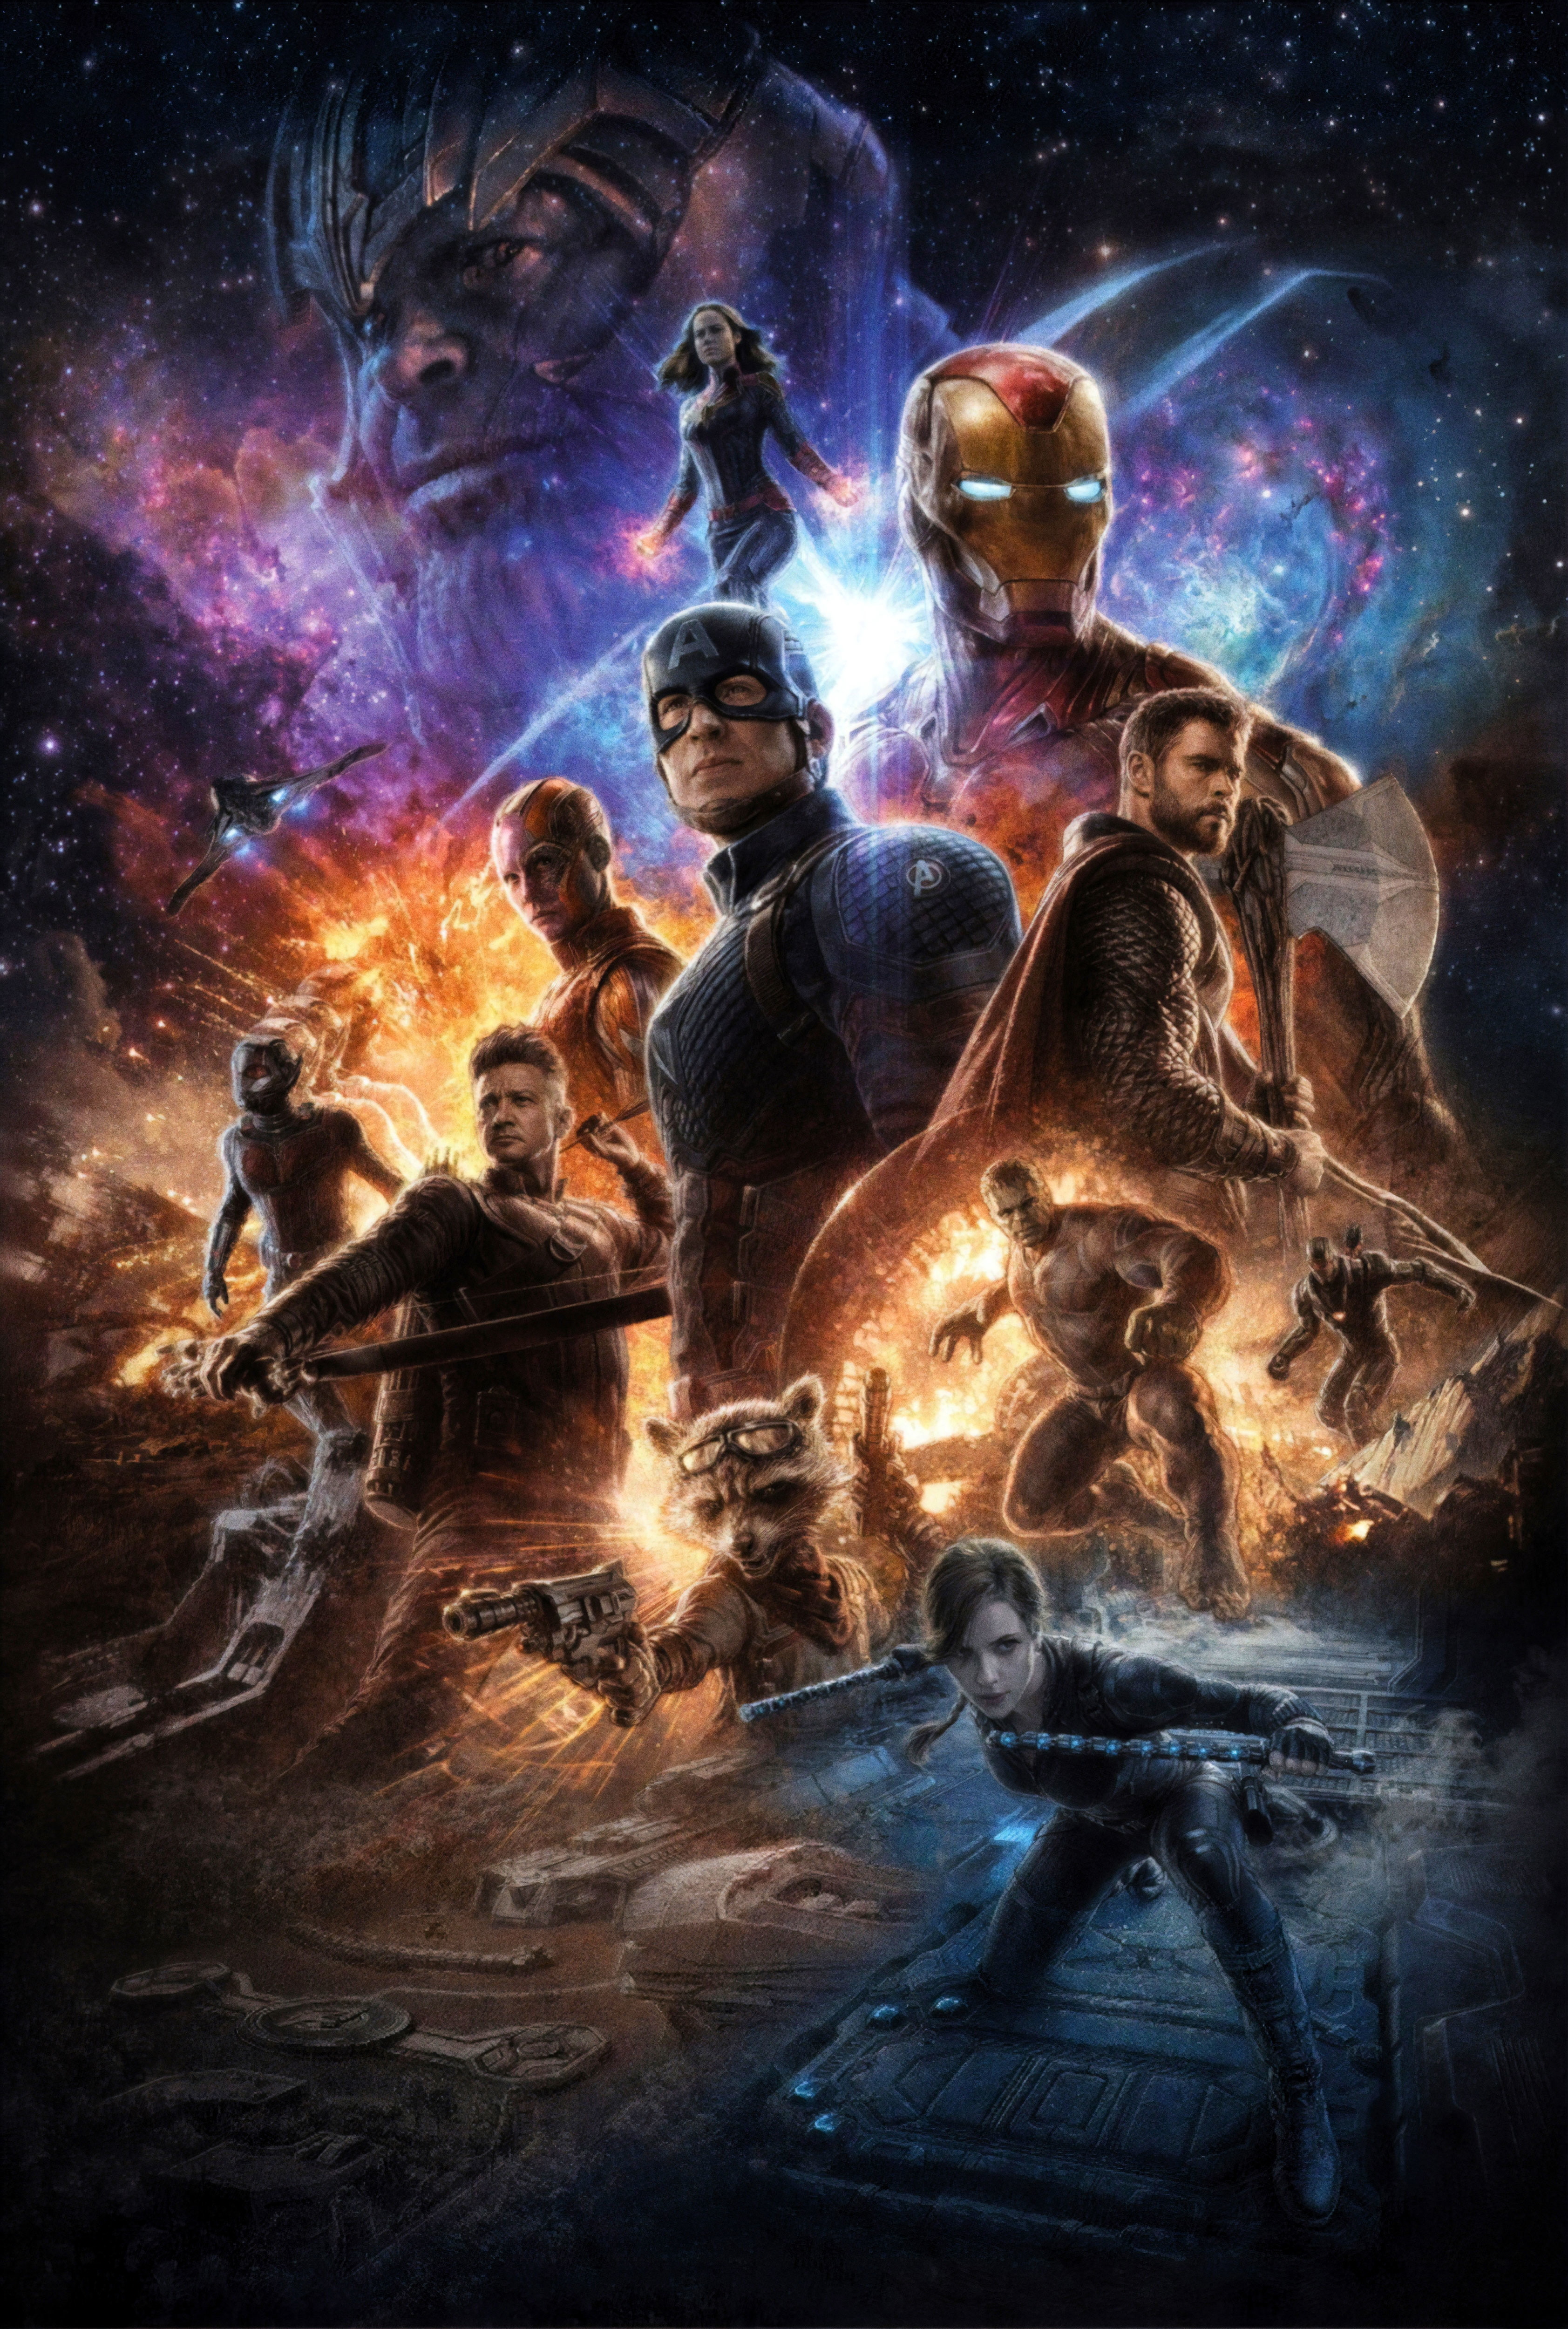  Avengers  Endgame 4K  Poster Wallpaper  HD  Movies 4K  